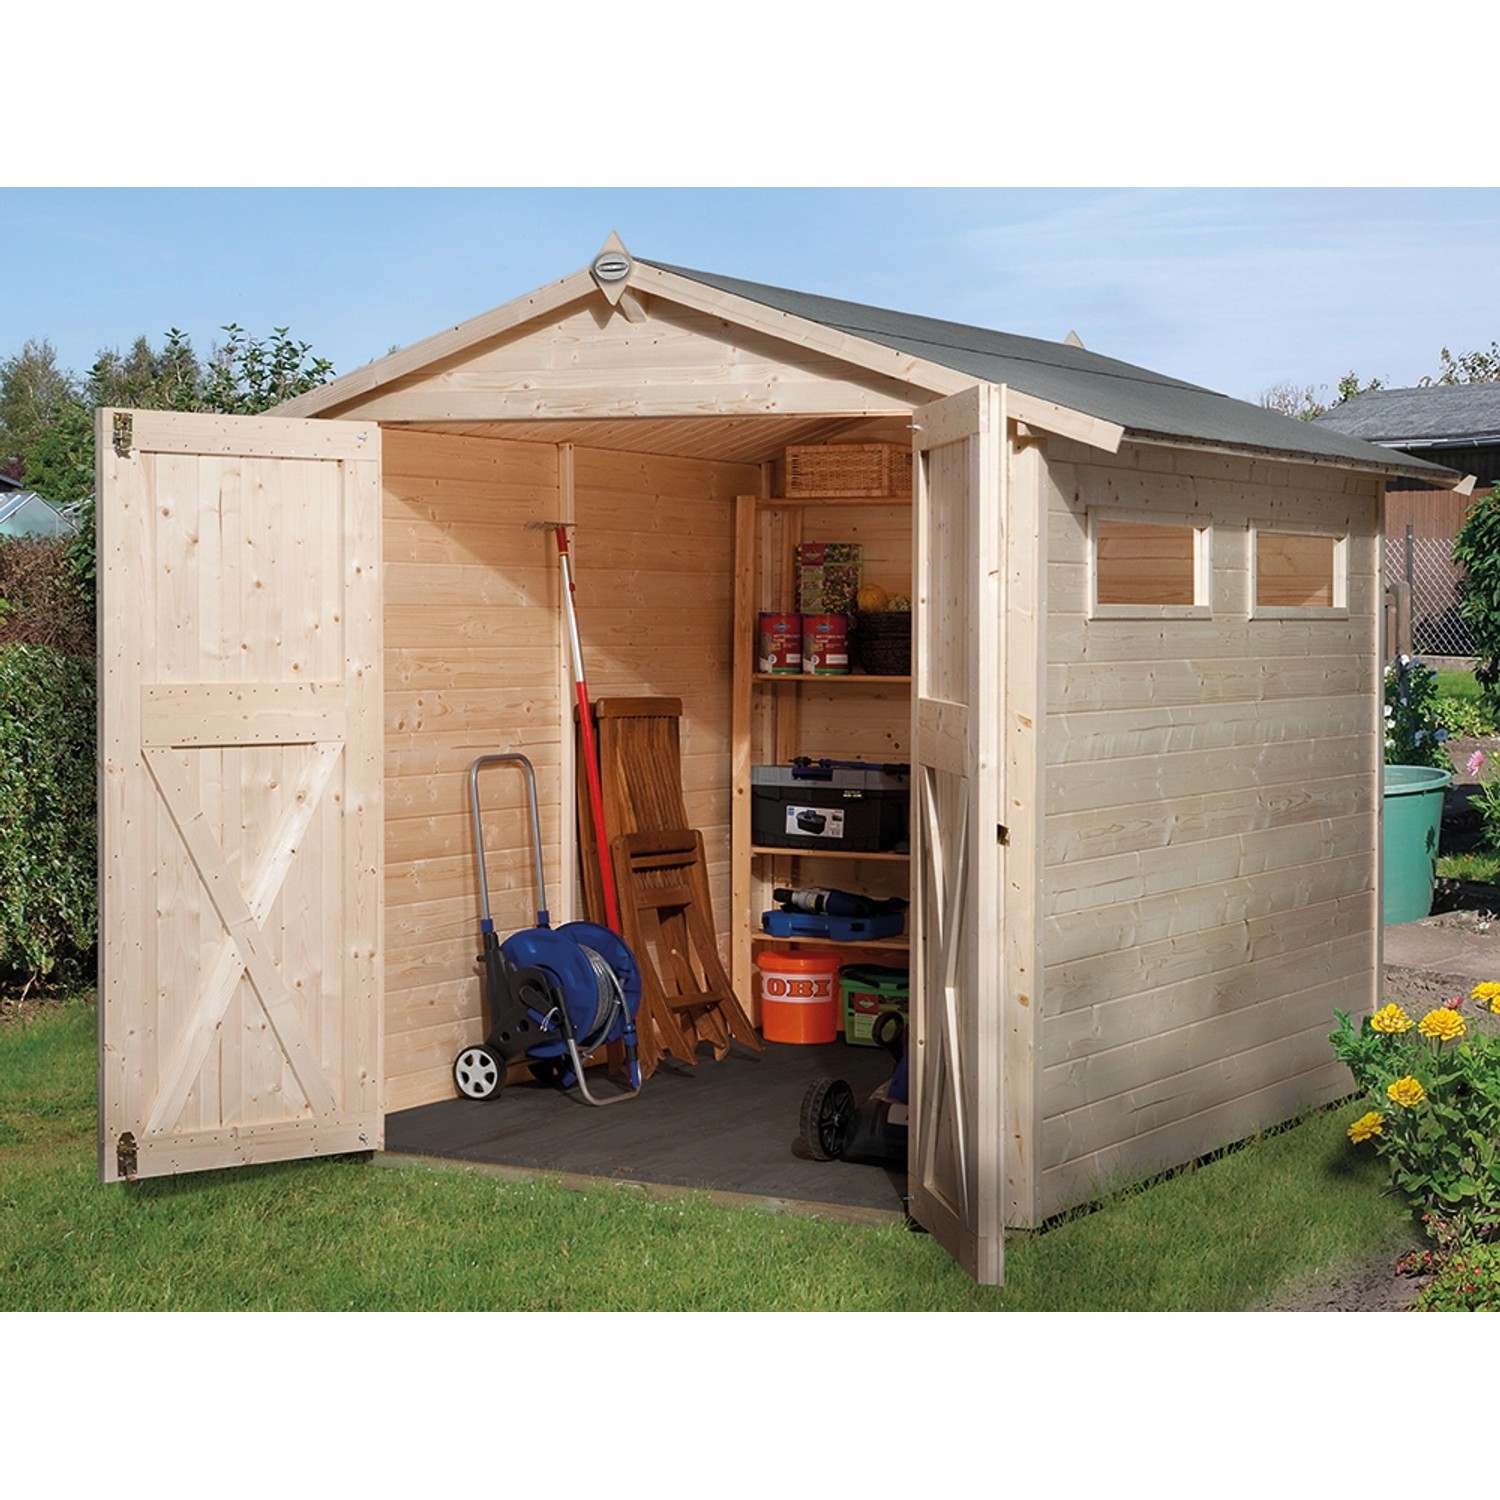 OBI Outdoor Living Holz-Gartenhaus/Gerätehaus Kompakt Satteldach 198 cm x 273 cm von OBI Outdoor Living